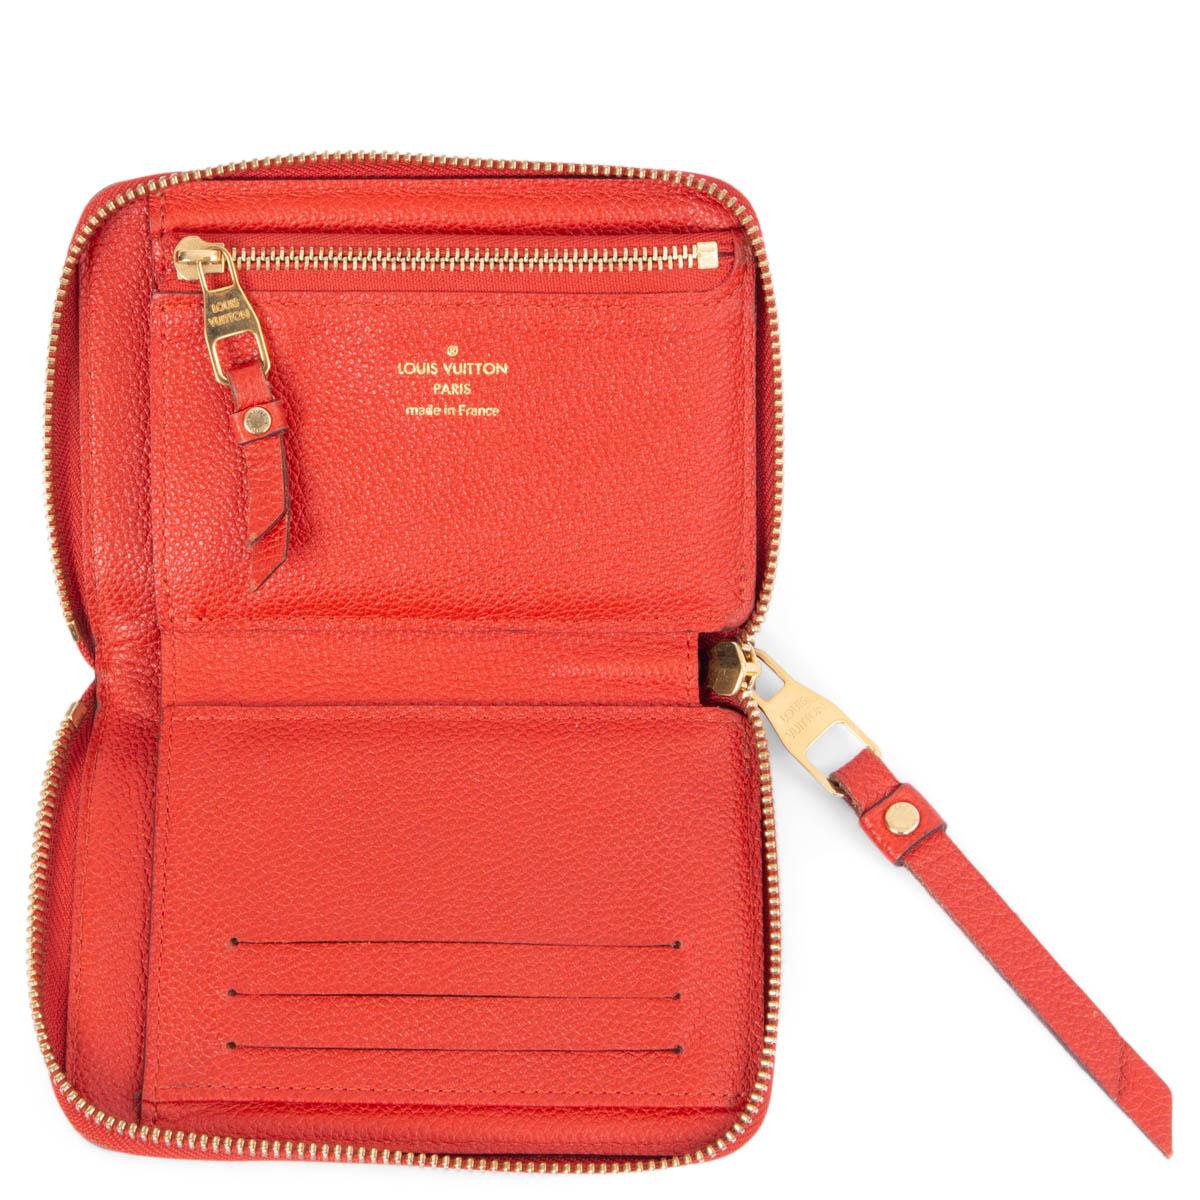 LOUIS VUITTON Orient red Monogram Empreinte SECRET Wallet In Excellent Condition For Sale In Zürich, CH